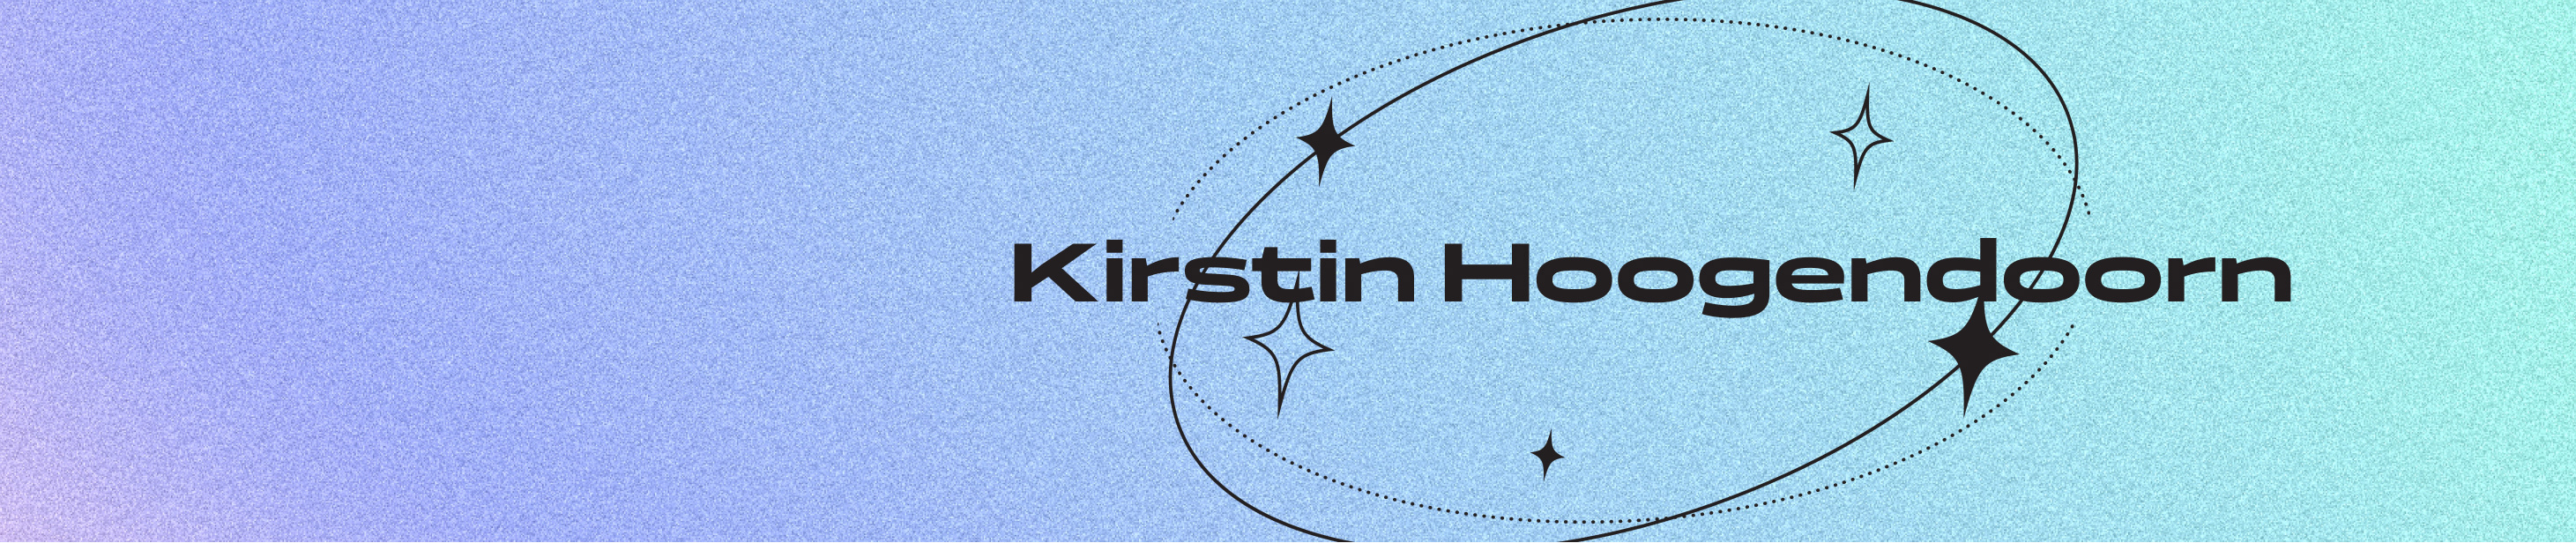 Kirstin Hoogendoorn's profile banner